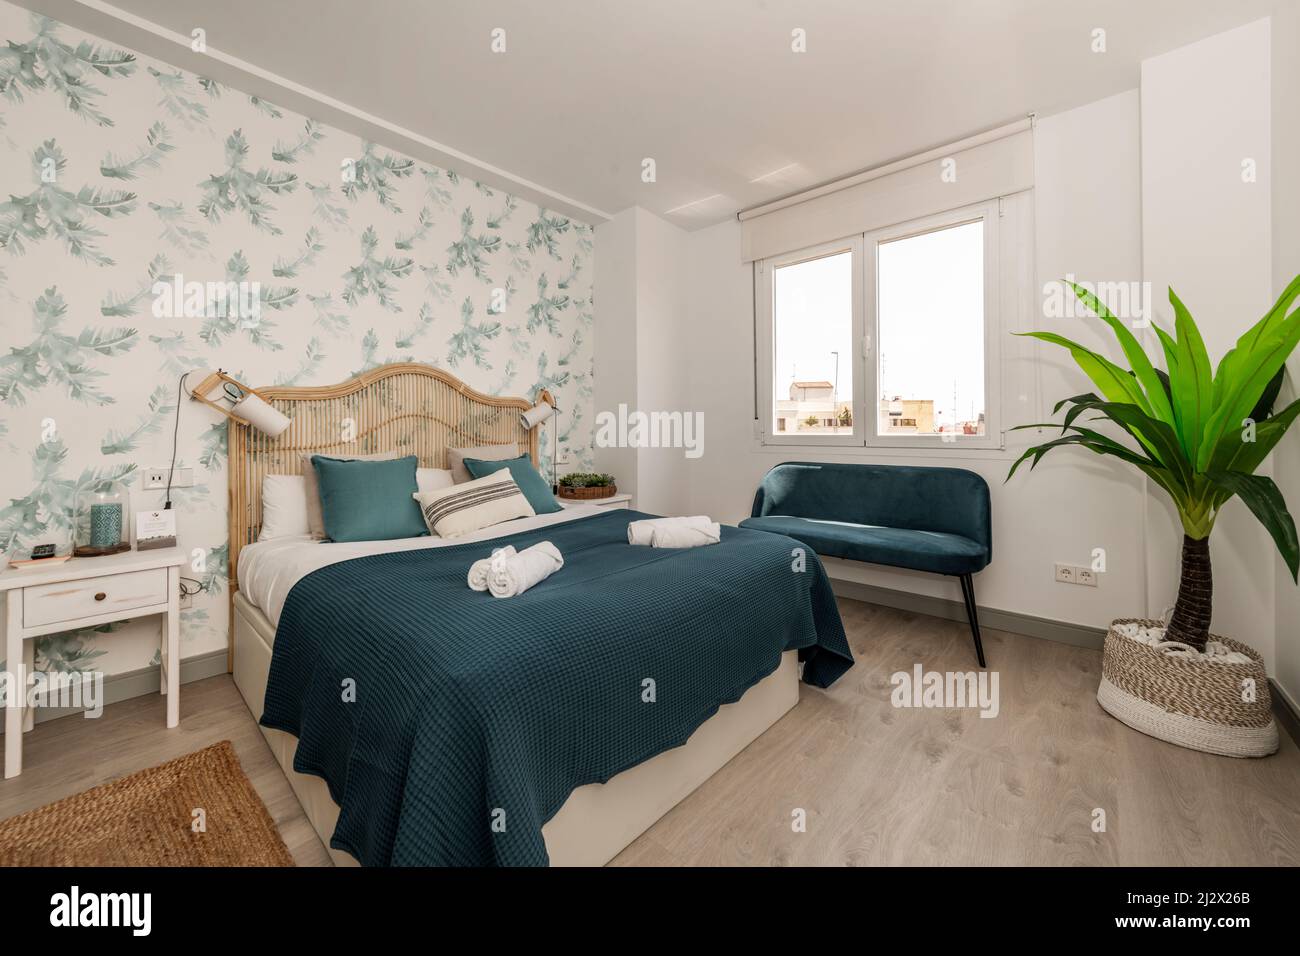 Chambre avec lit double et tête de lit en osier, murs avec papier peint décoratif à motifs végétaux, tapis en fibres naturelles, couverture bleue et natchi Banque D'Images